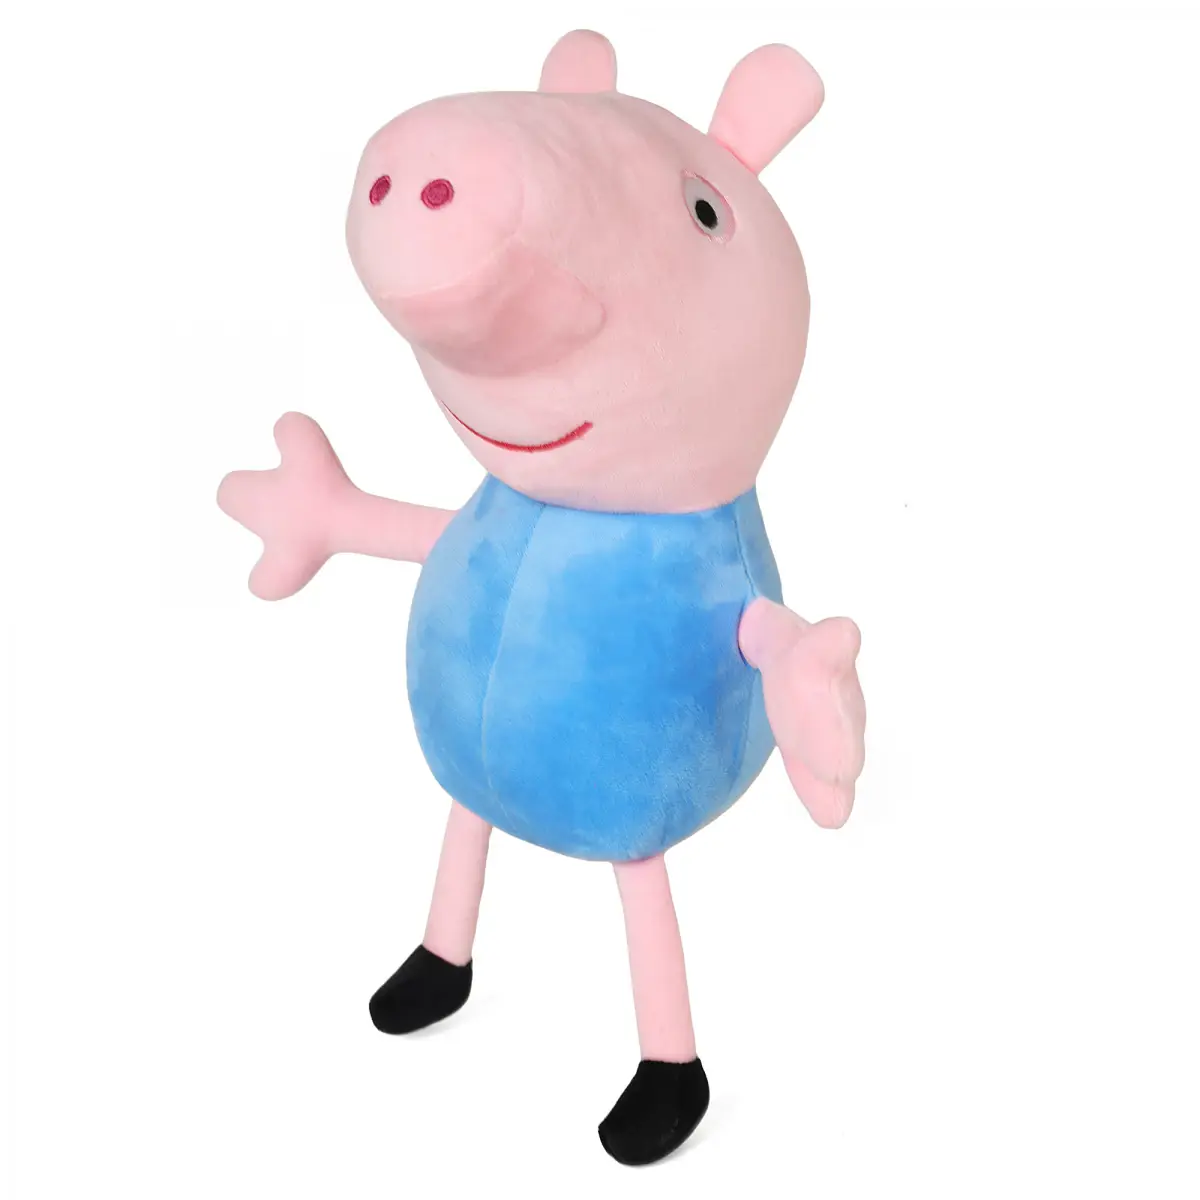 Mirada Musical George Pig, 3Y+, Pink, 38cm